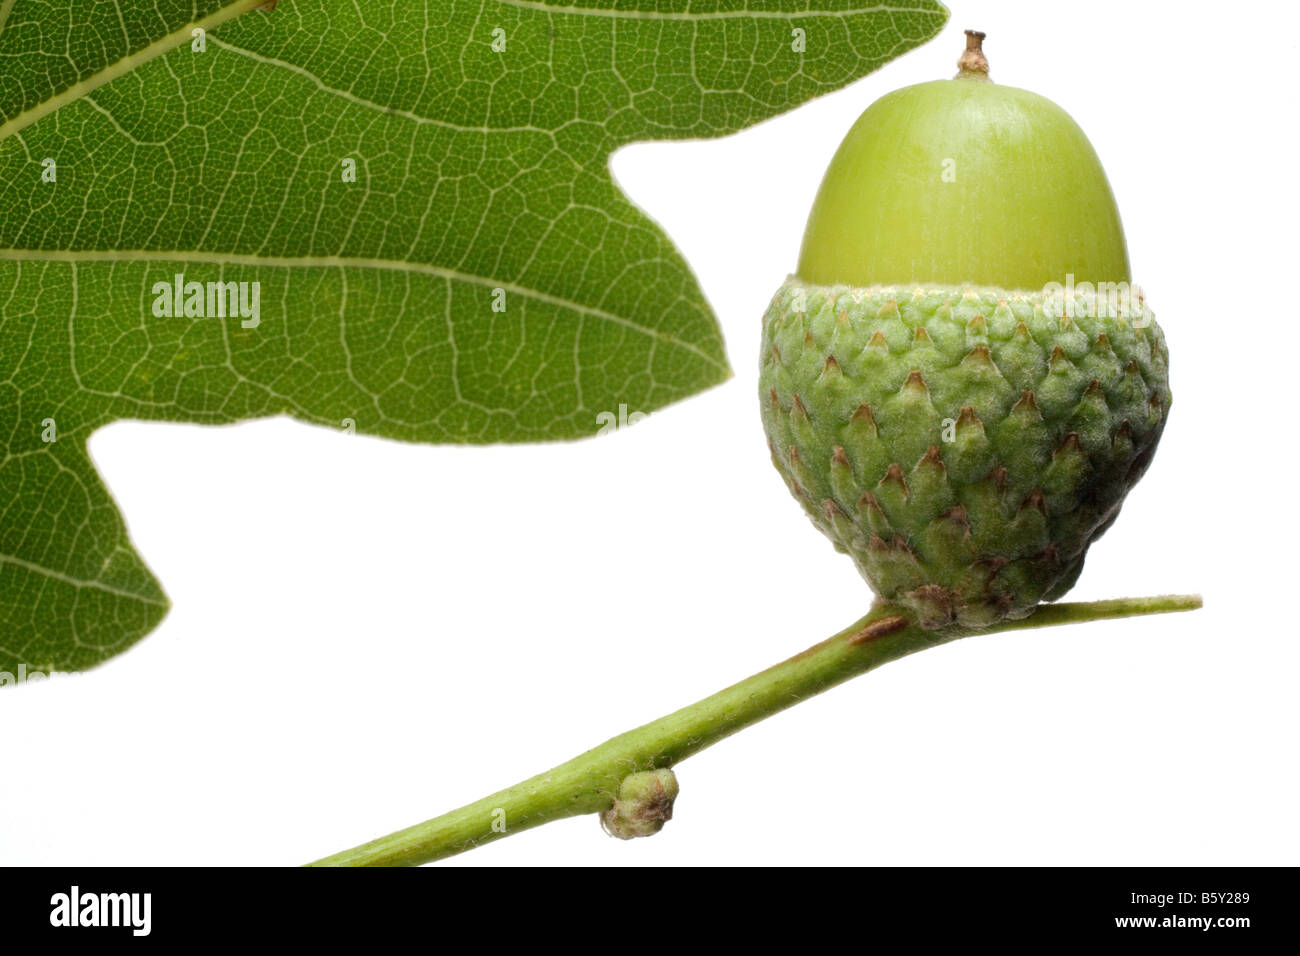 Ein grünen Stiel hält eine "Eichel-Cup", in der gibt es eine grüne Eichel (Samen einer Eiche). Abschnitt der Eichenblatt, weißen Hintergrund. Stockfoto